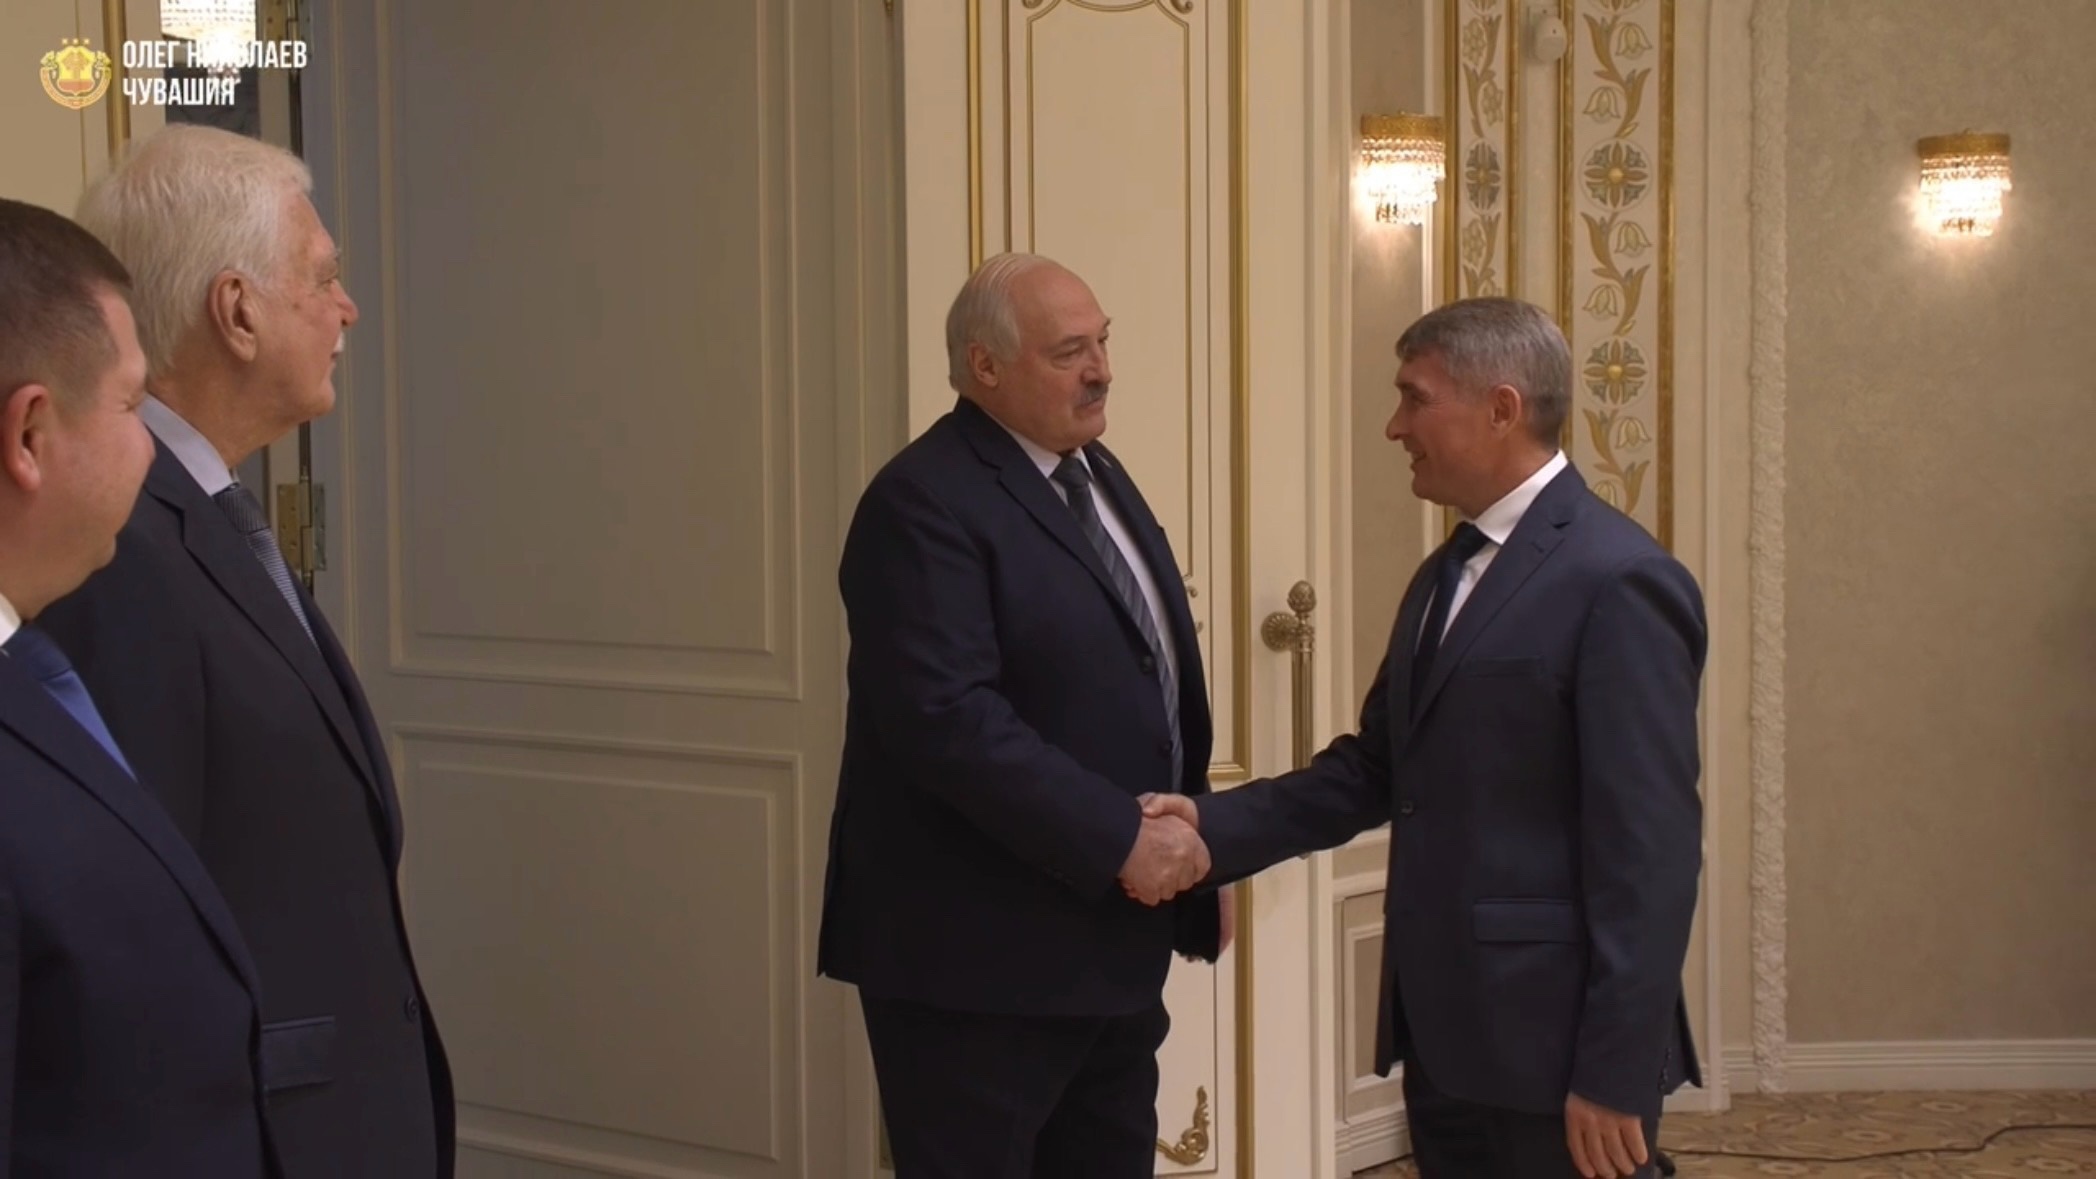 Николаев встретился с Лукашенко, чтобы обсудить вопросы взаимовыгодных отношений с Беларусью